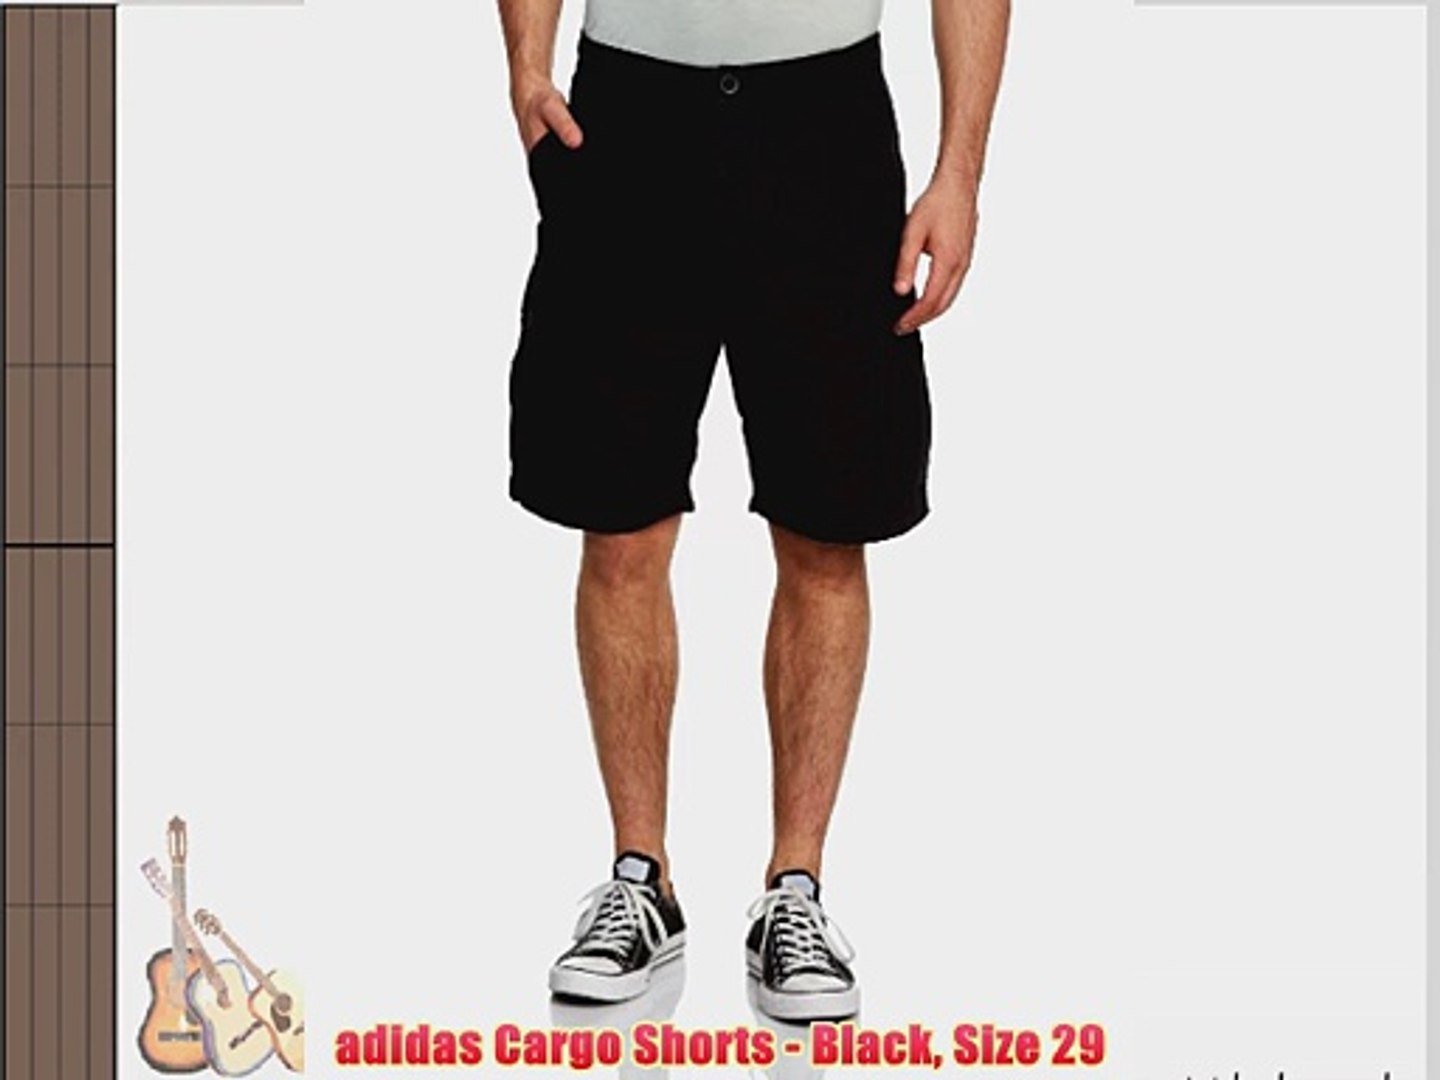 adidas cargo shorts black